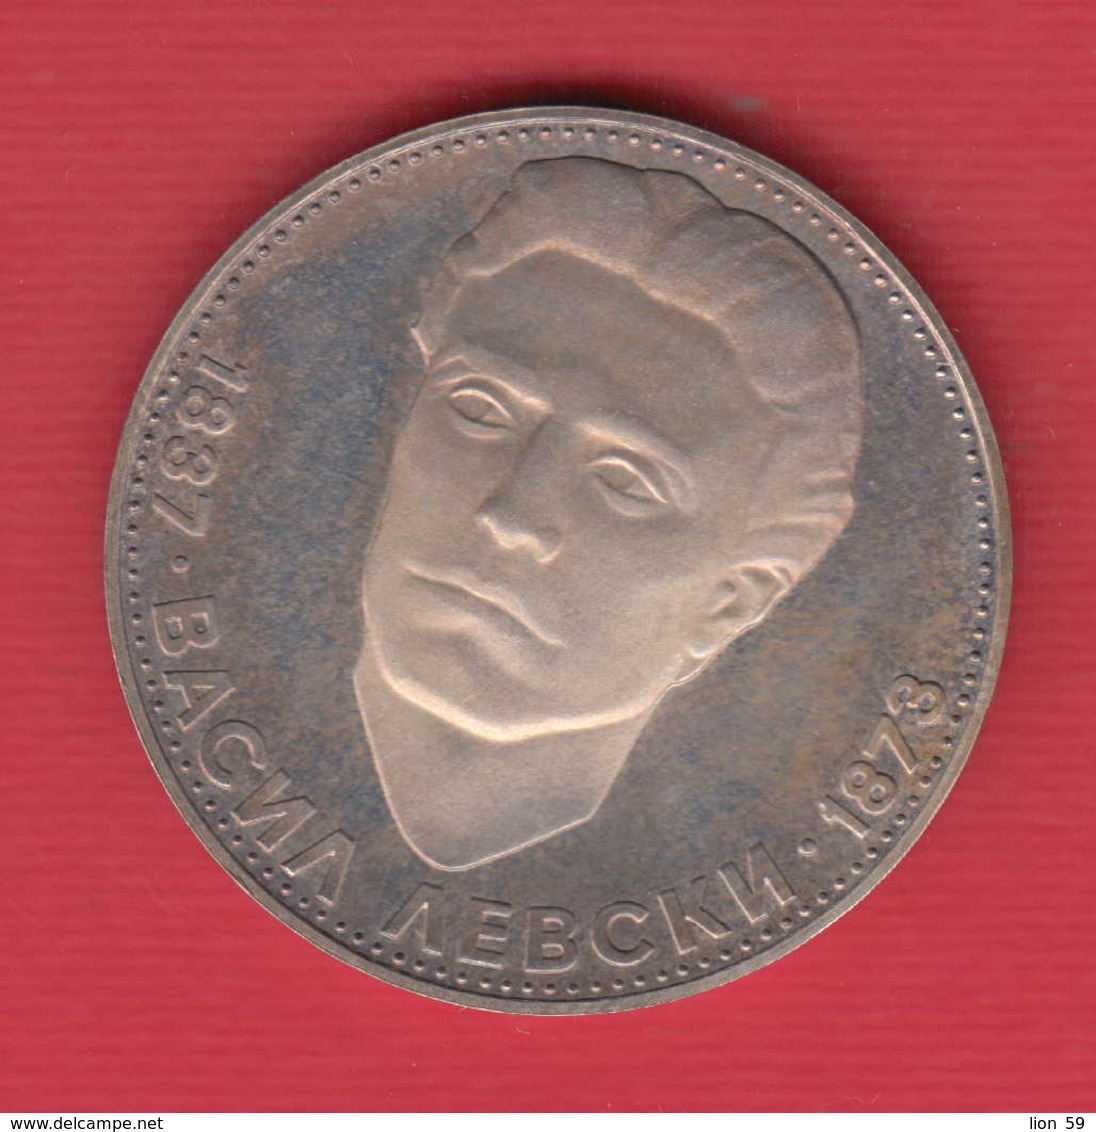 C16  / 5  Leva - 1973 - Vasil Levski 1837 - 1873 -  Bulgaria Bulgarie Bulgarien SILVER ( Cu ) Coins Munzen Monnaies - Bulgaria